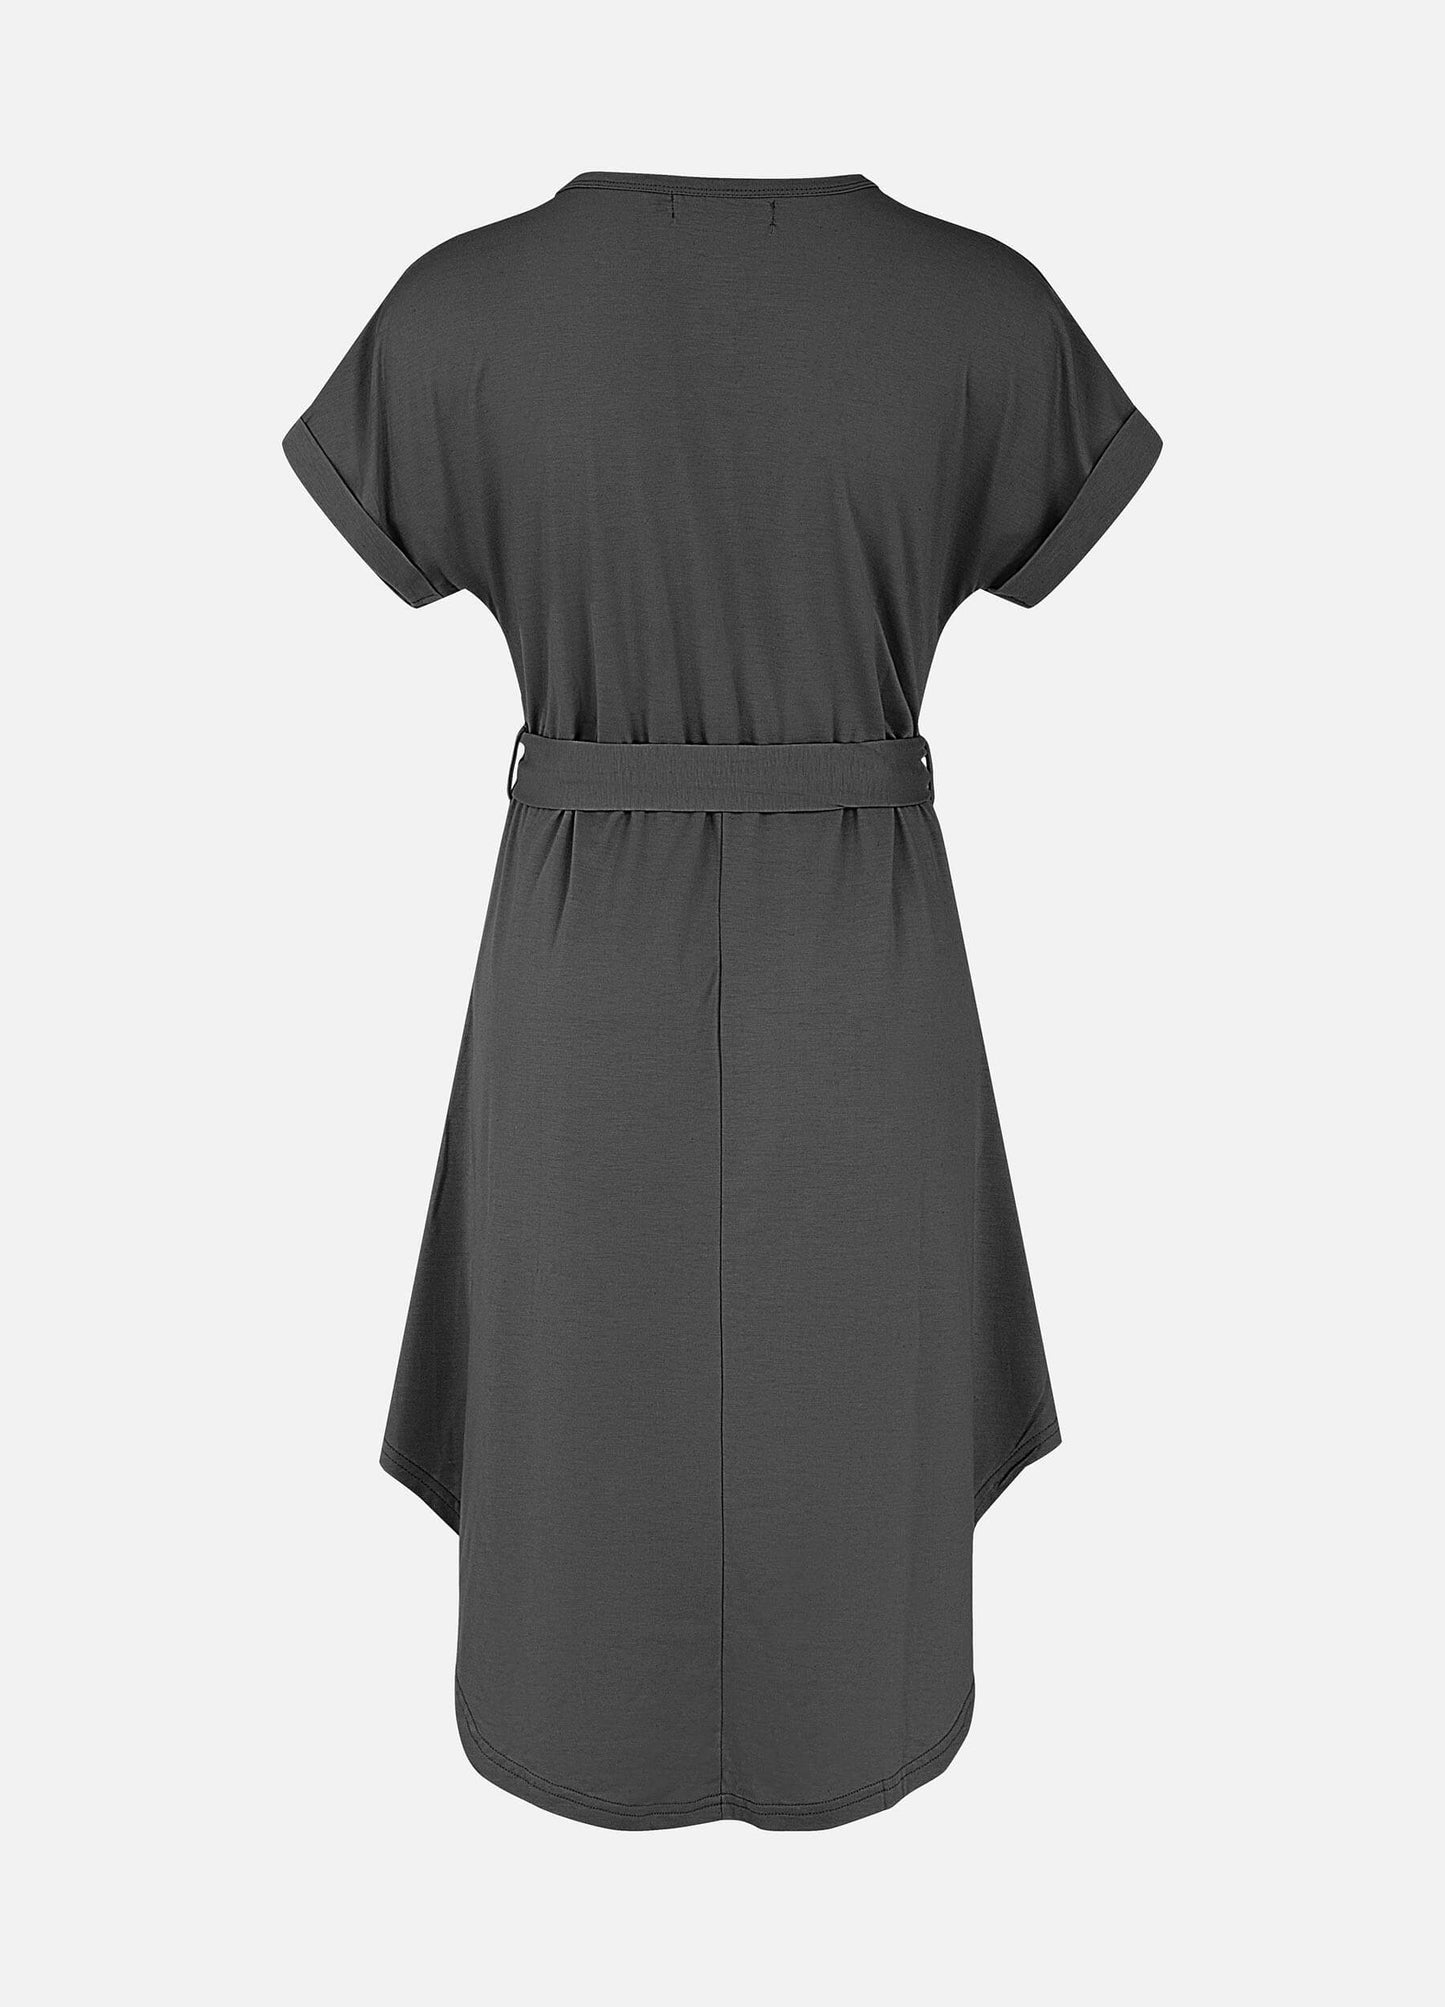 MECALA Women's Short Sleeve Henley Neck High Low Hem Plain Casual Dress With Belt